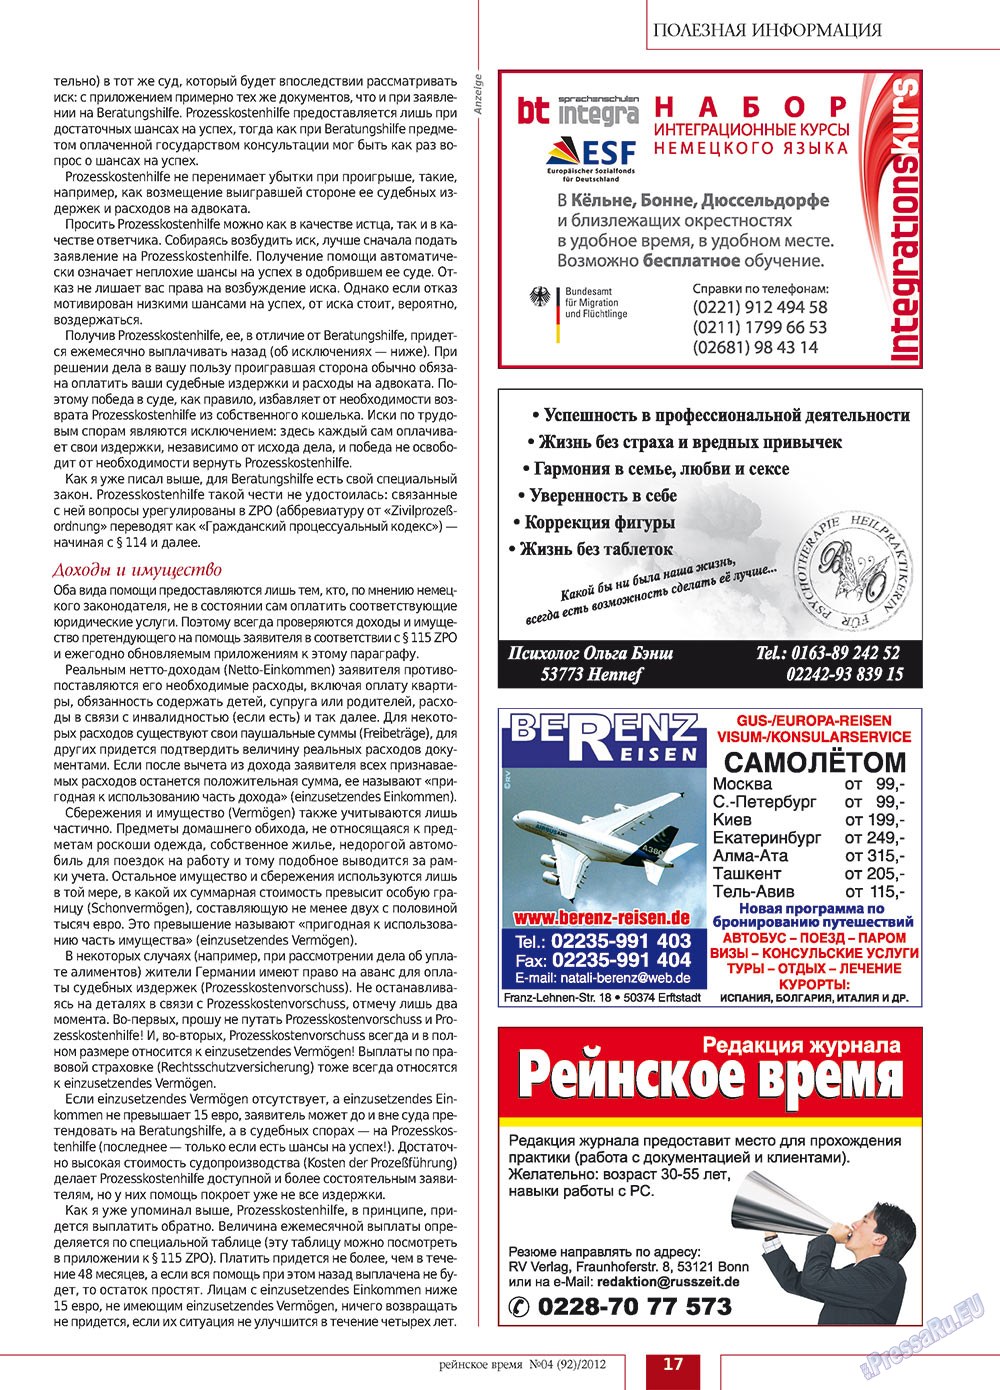 Rejnskoe vremja (Zeitschrift). 2012 Jahr, Ausgabe 4, Seite 17